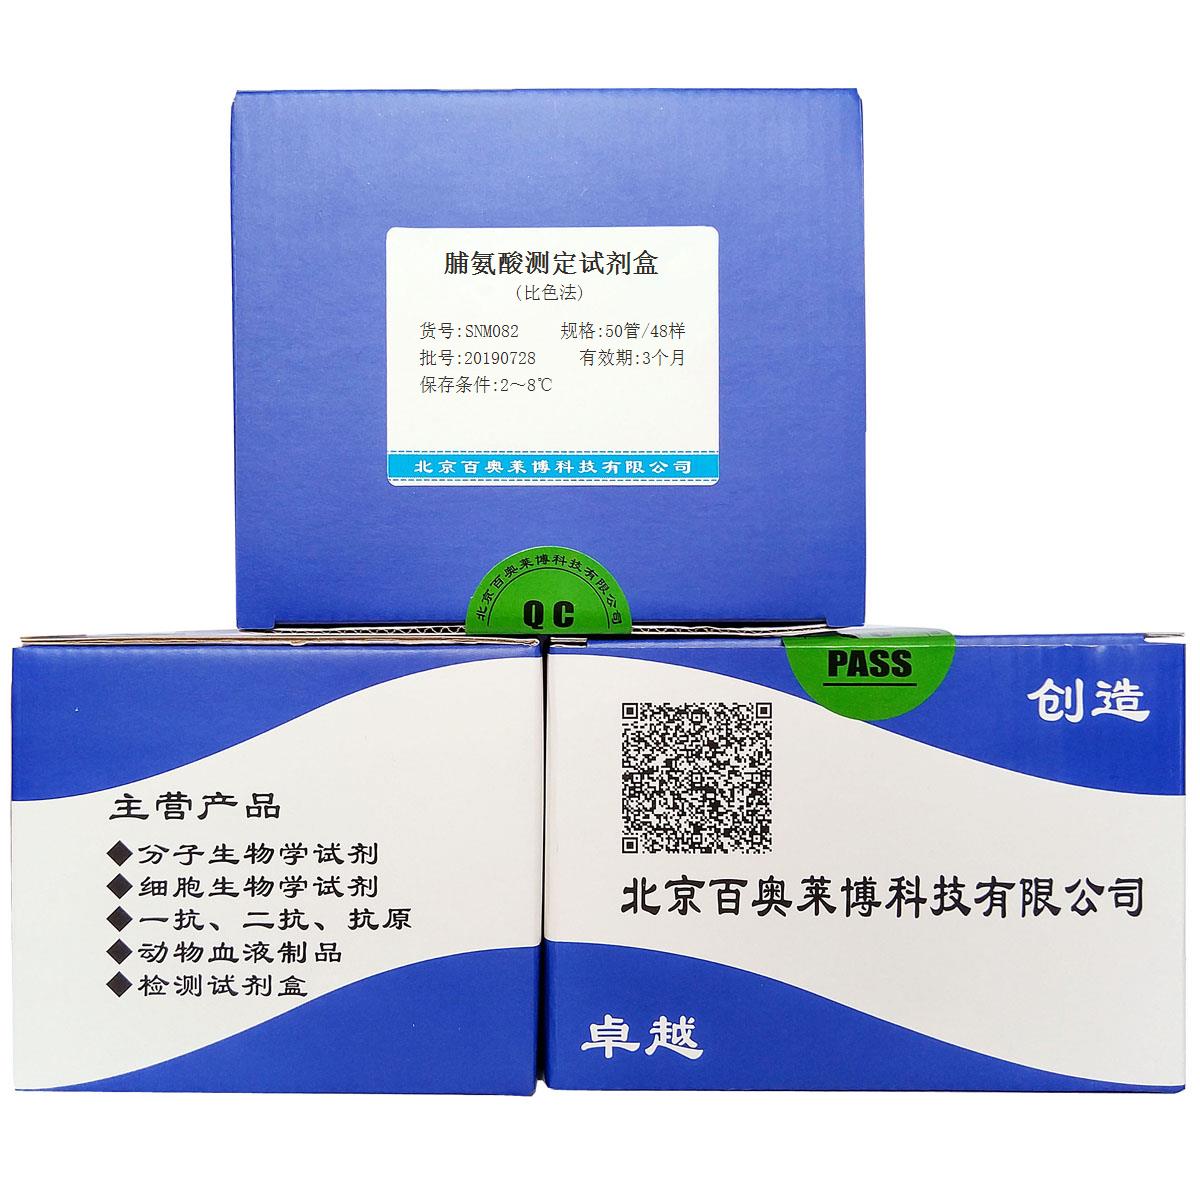 脯氨酸测定试剂盒(比色法)北京供应商